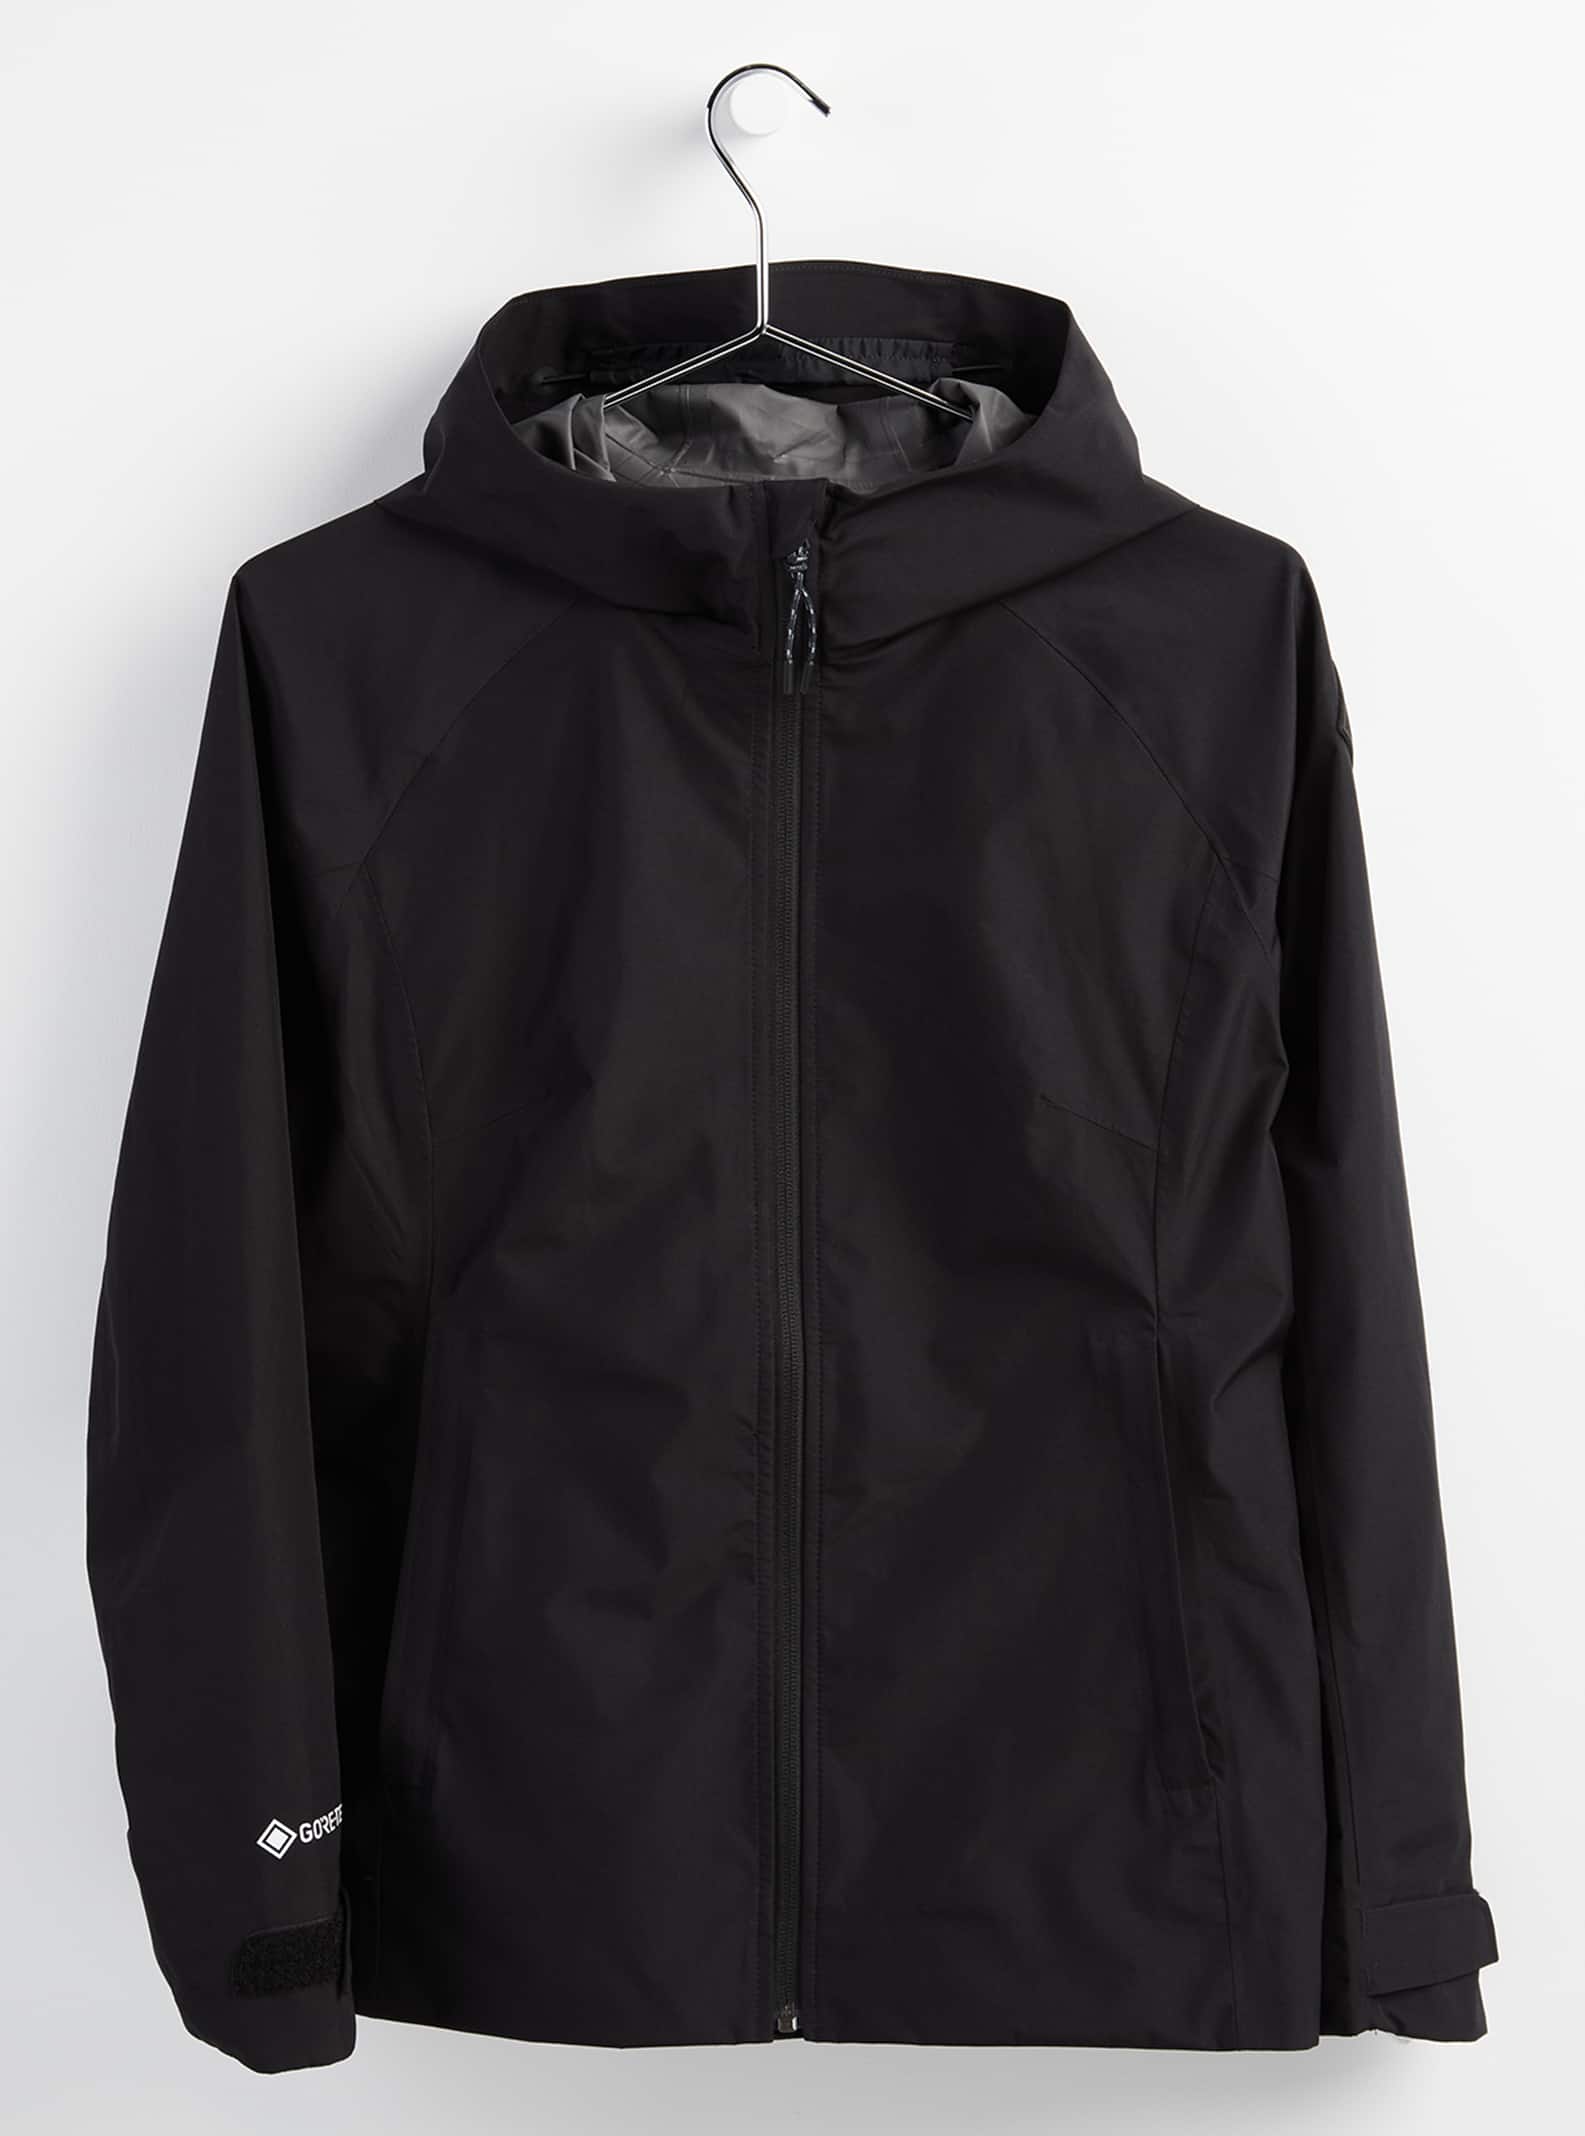 【サンプル】Women's Burton GORE-TEX Packrite Rain Jacket